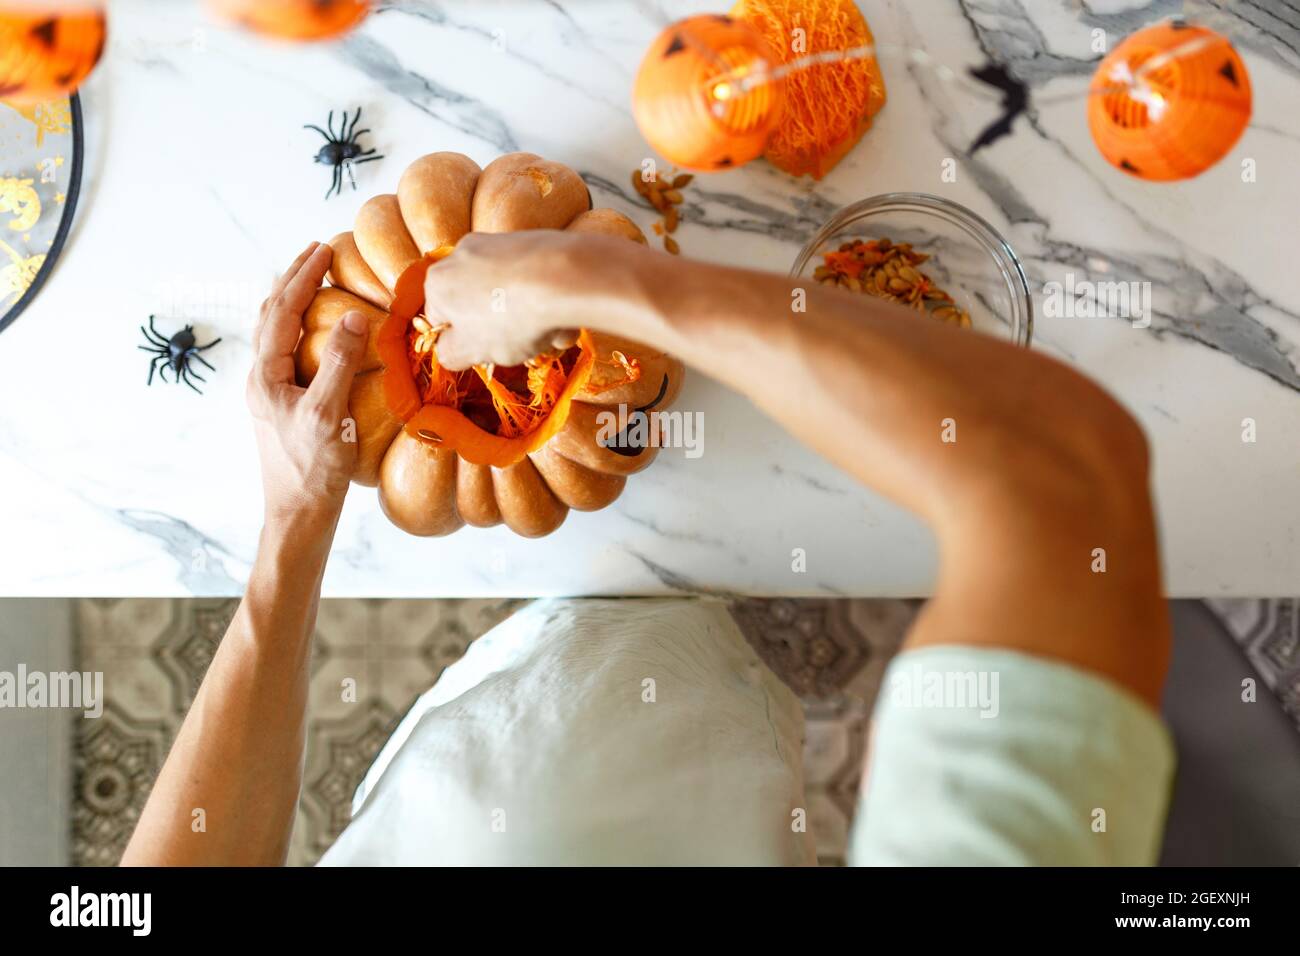 Eine Nahaufnahme von Menschenhand zieht Samen und faseriges Material von einem Kürbis, bevor er zu Halloween schnitzen kann. jack-o-Laterne. Draufsicht Stockfoto